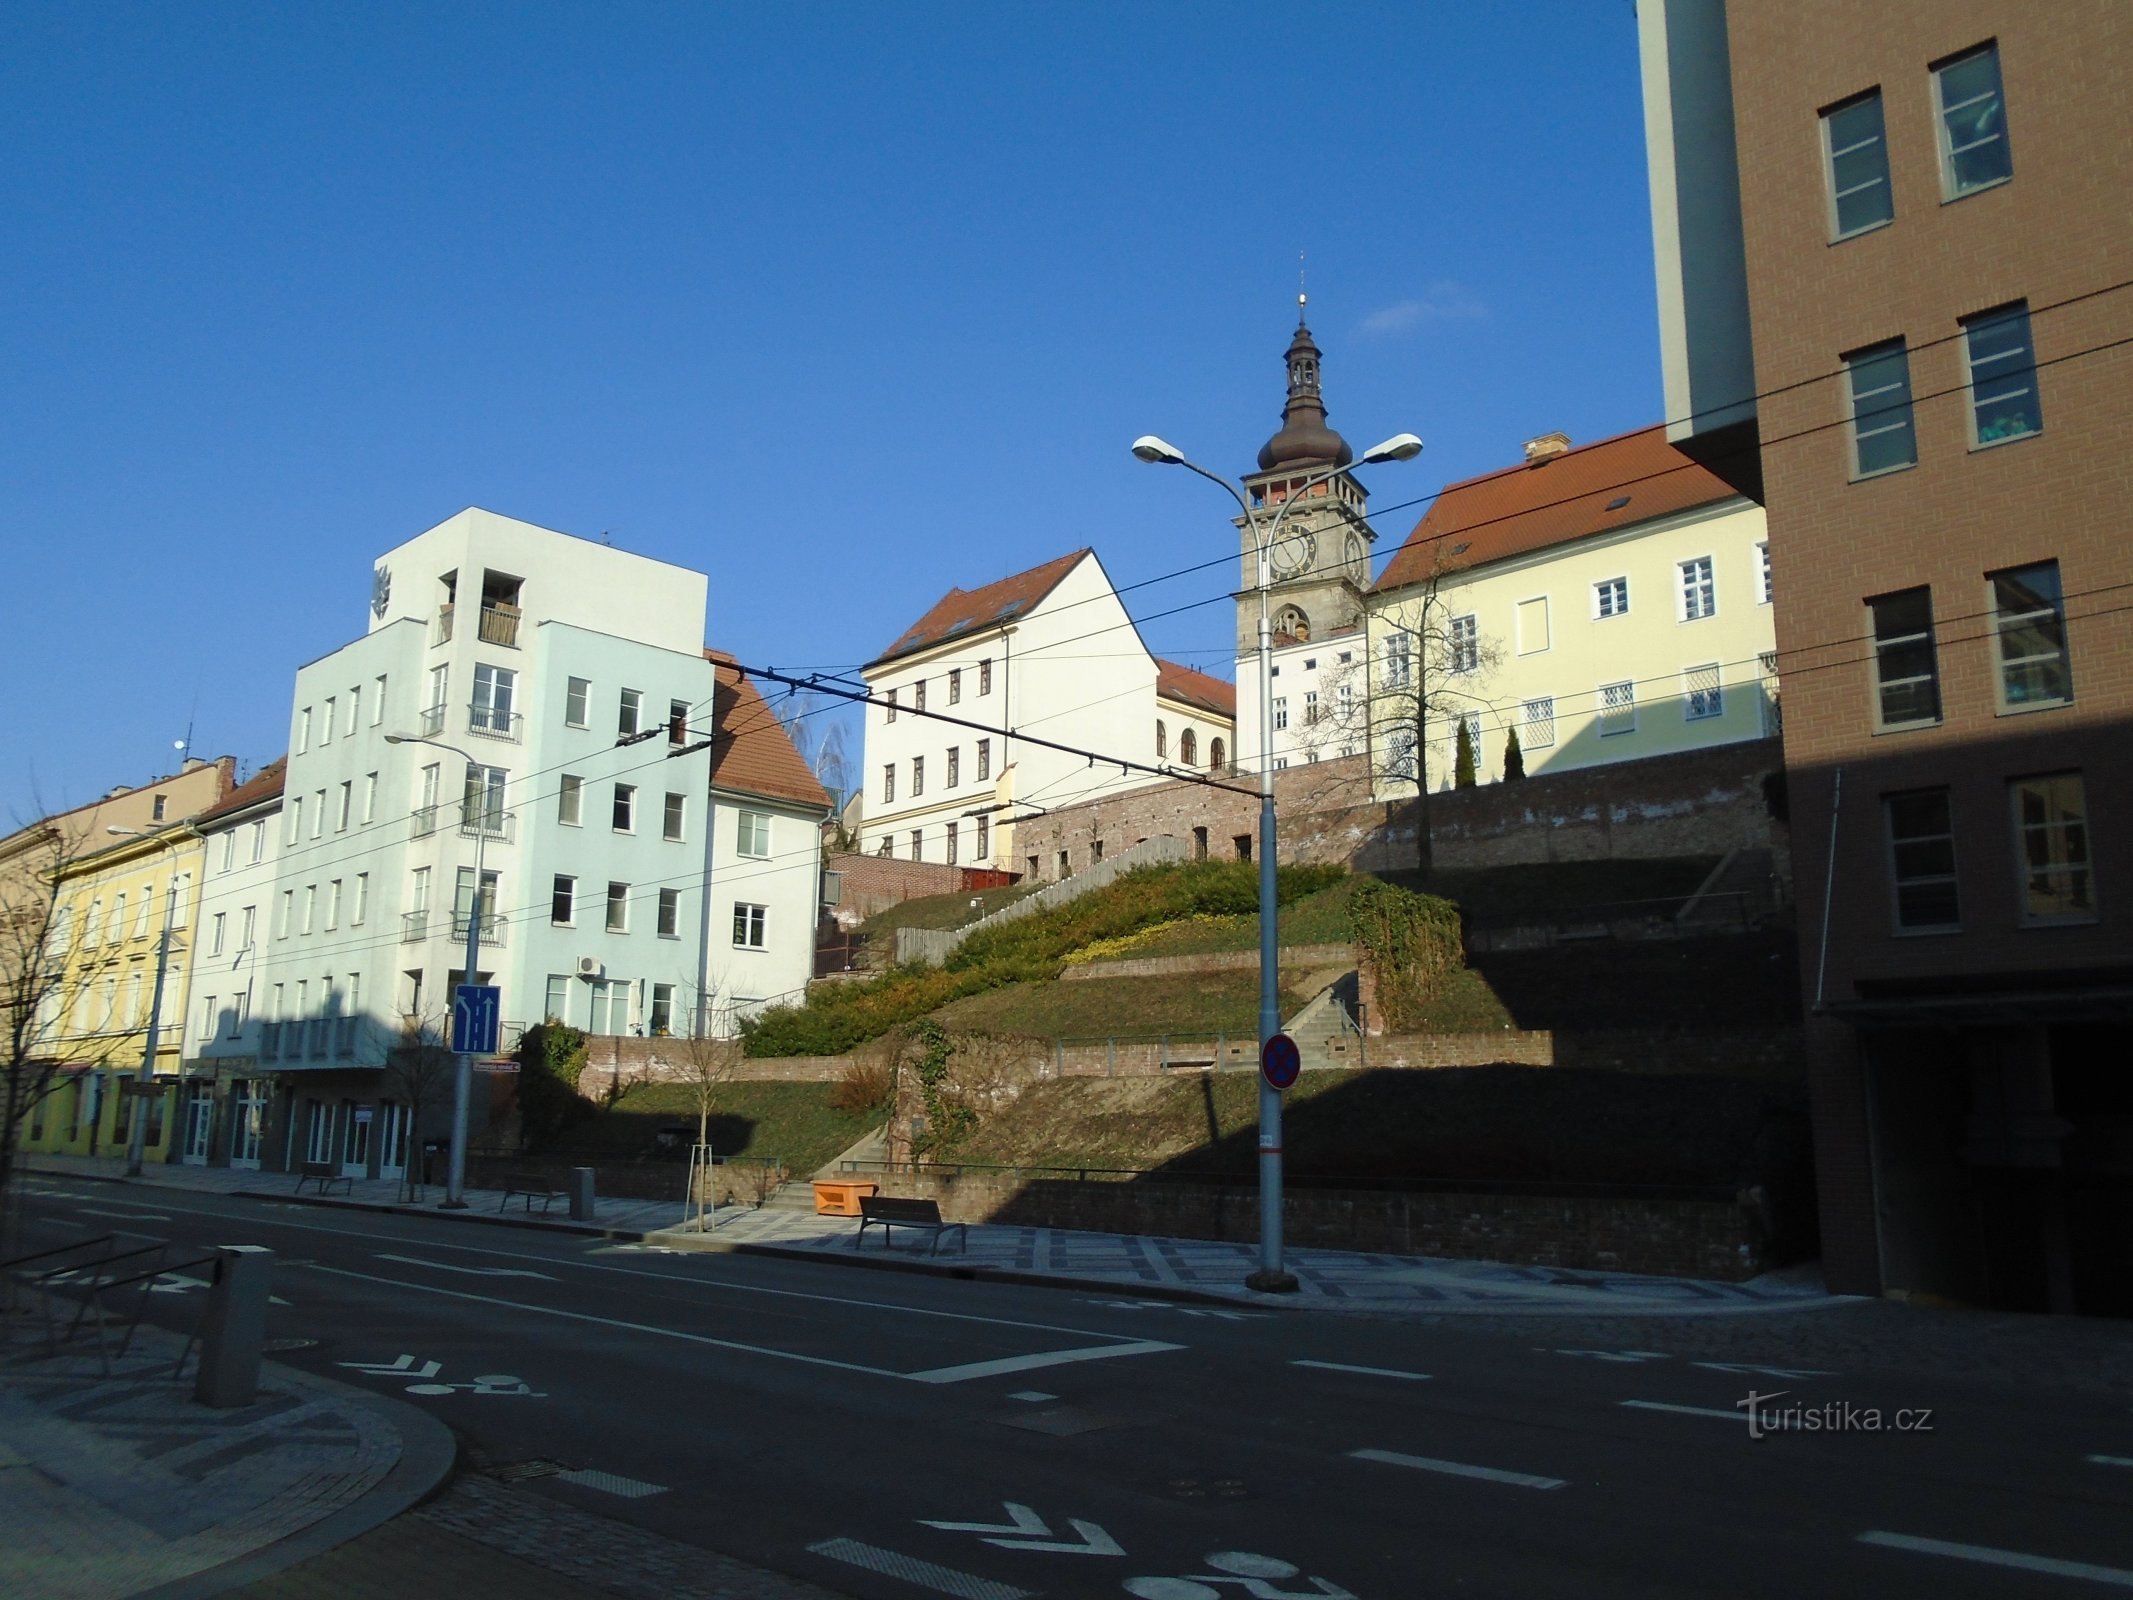 Kozinka Staircase (Hradec Králové, 1.4. huhtikuuta 2018)